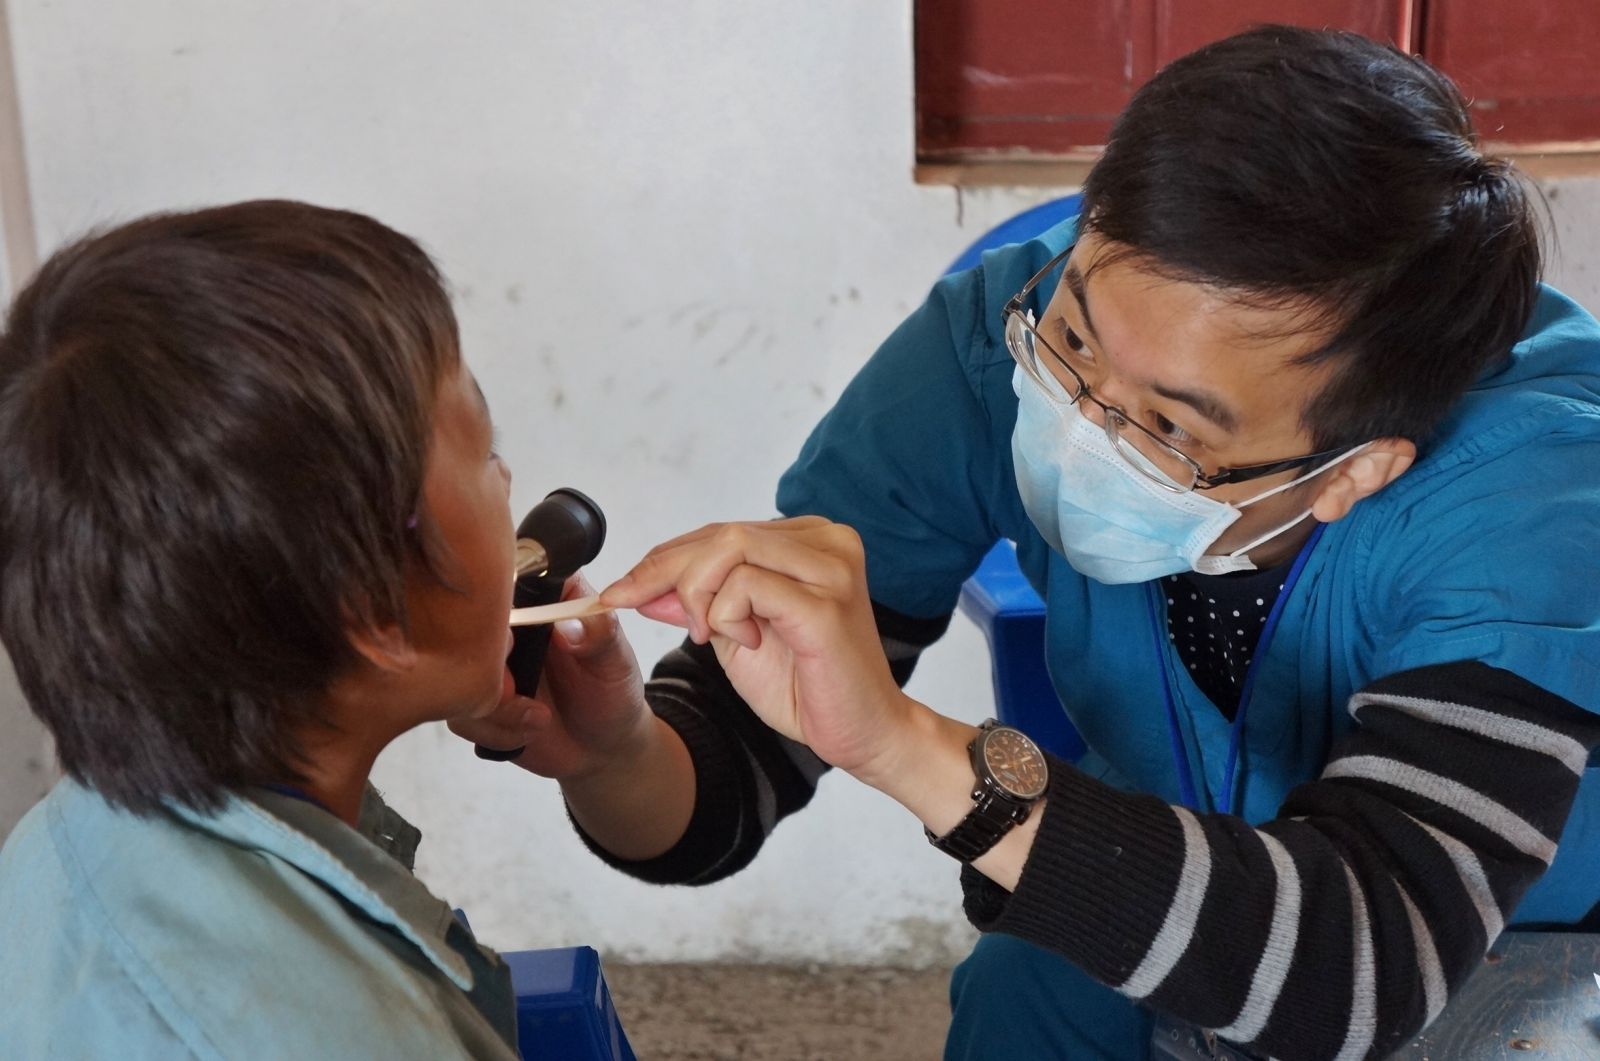 彰基前往尼泊尔山区医疗服务 协助提升卫生站功能 | 文章内置图片